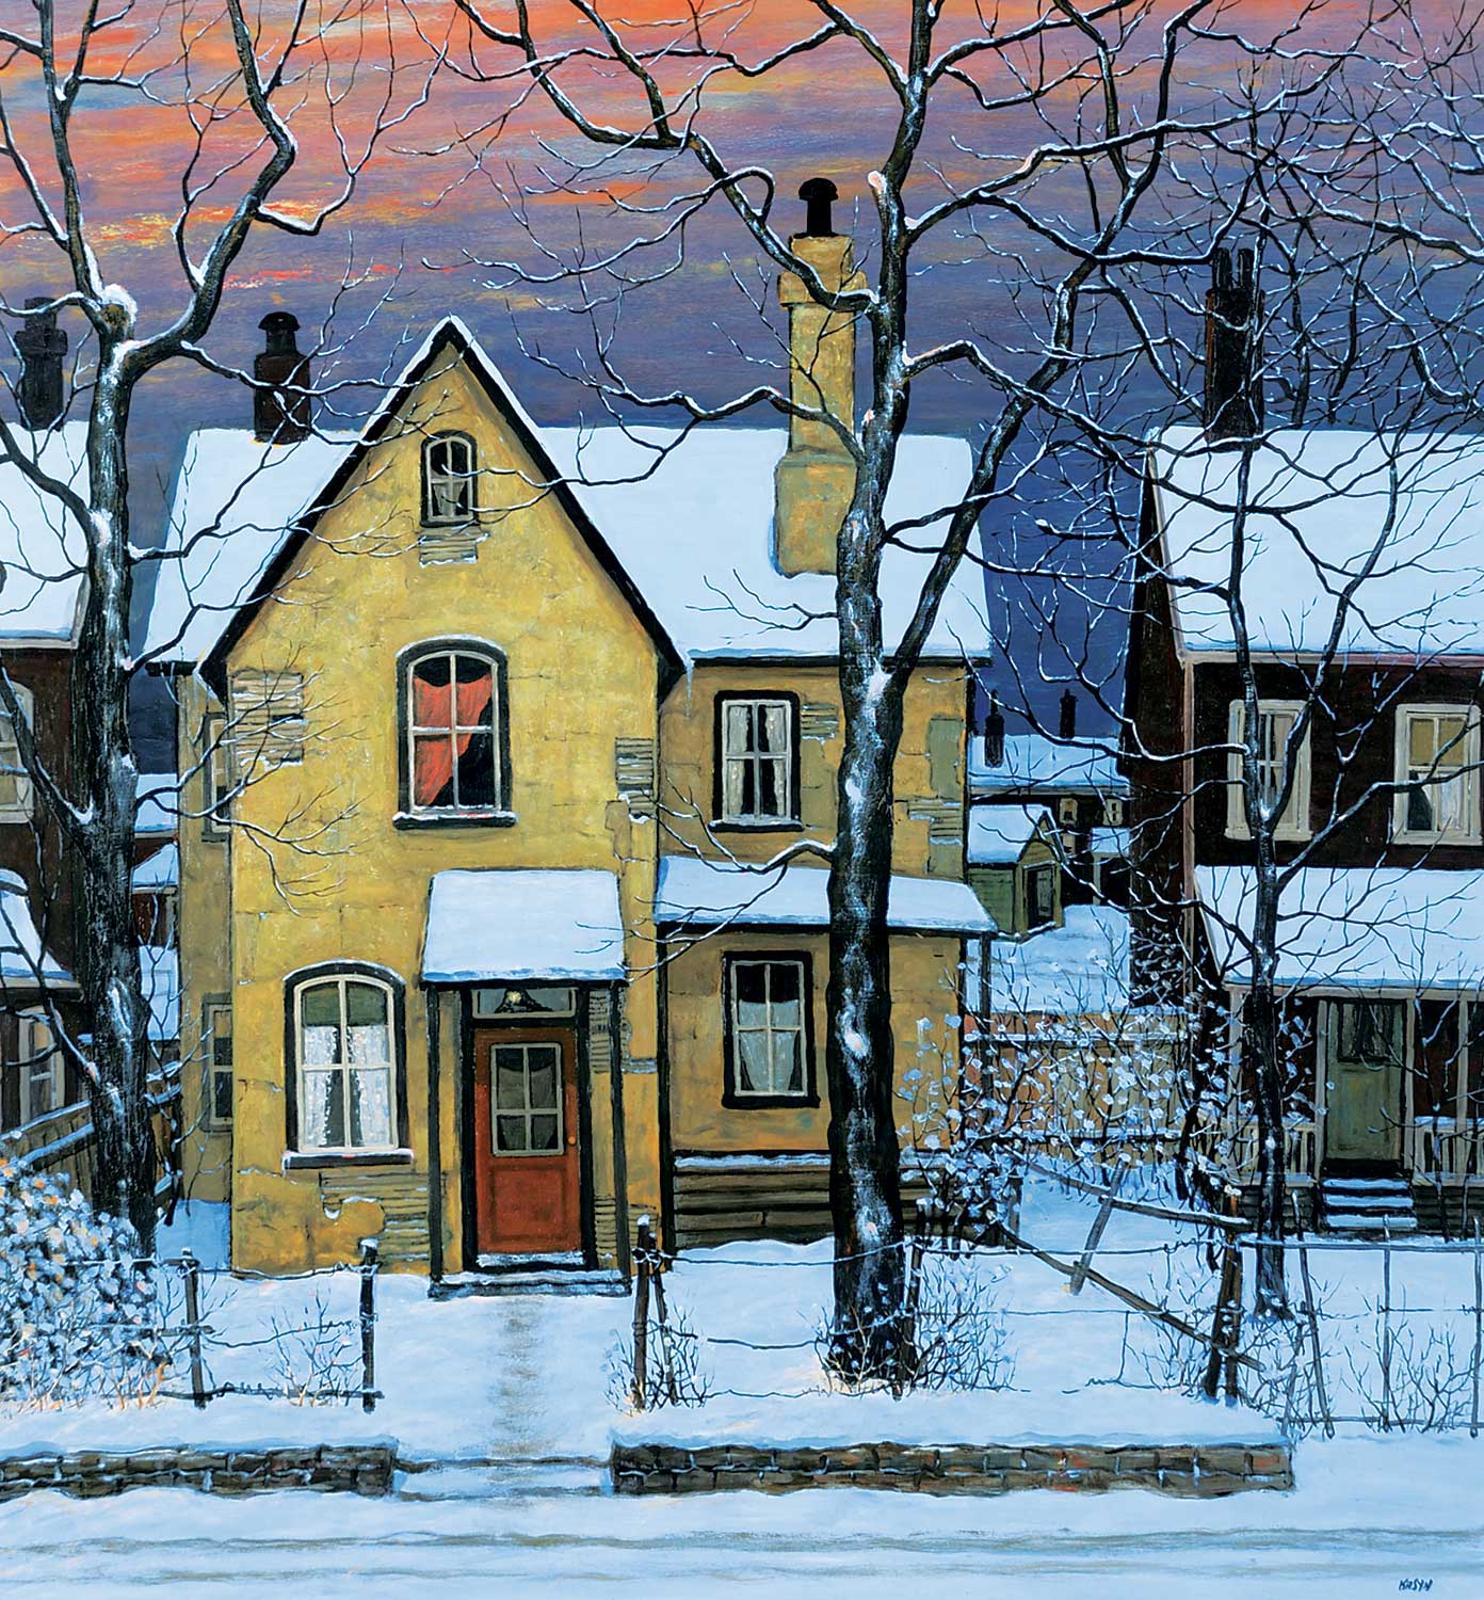 John Kasyn (1926-2008) - At the Break of Dawn [Sackville St. Toronto]